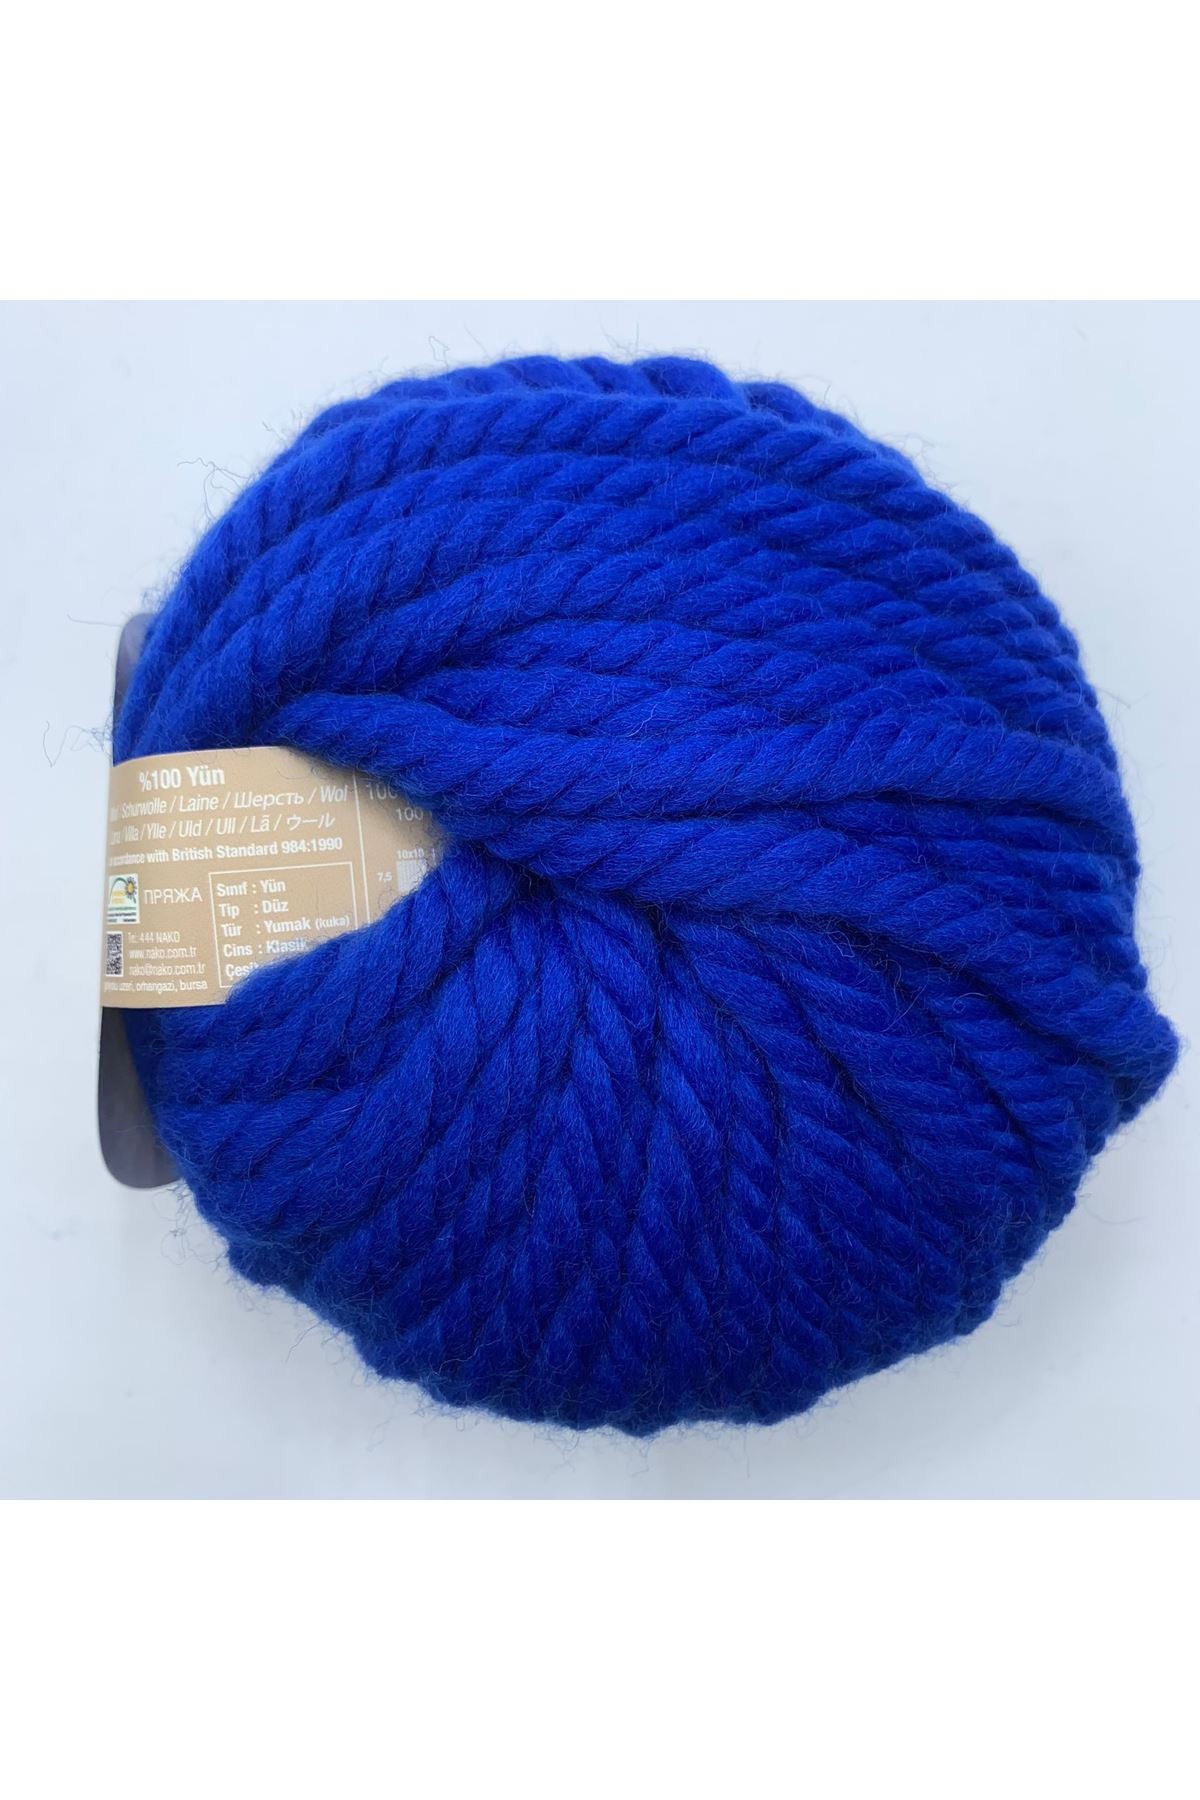 Outlet 5'li Paket Nako Pure Wool Plus %100 Yün 05329 Royal Mavi 689